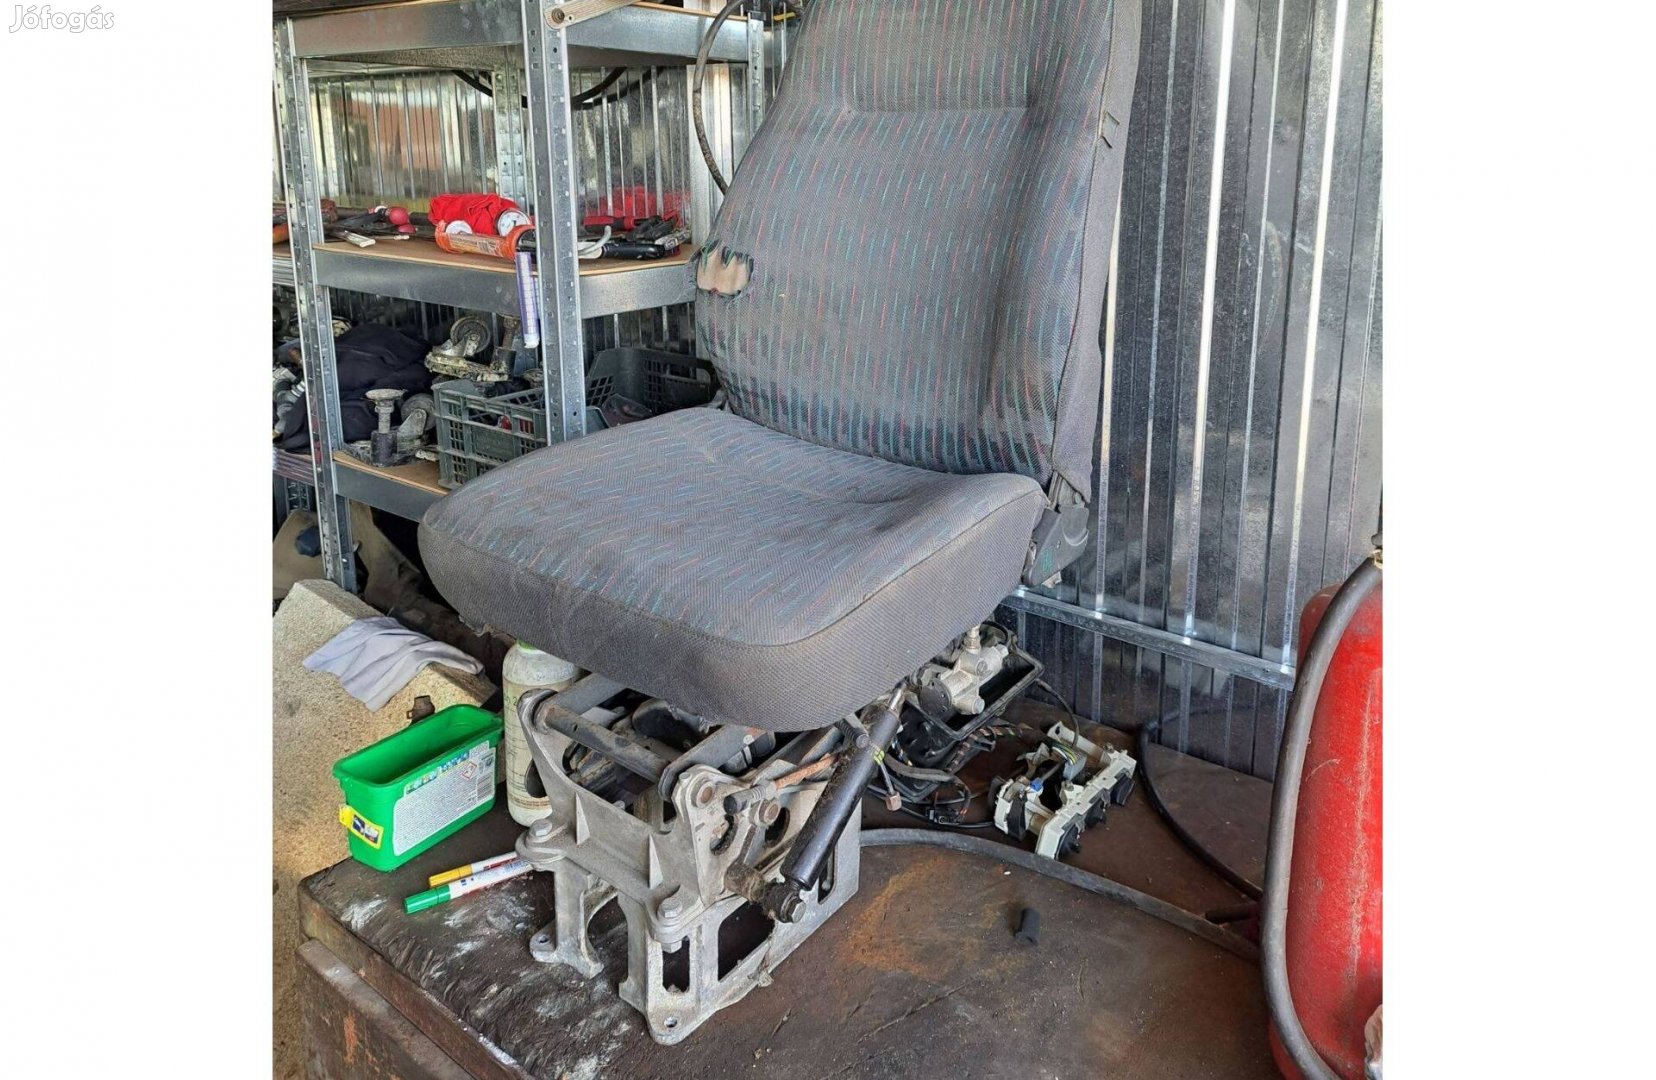 Eladó Ikarus busz sofőr ülés / légrugós állítható autóbusz sofőr ülés